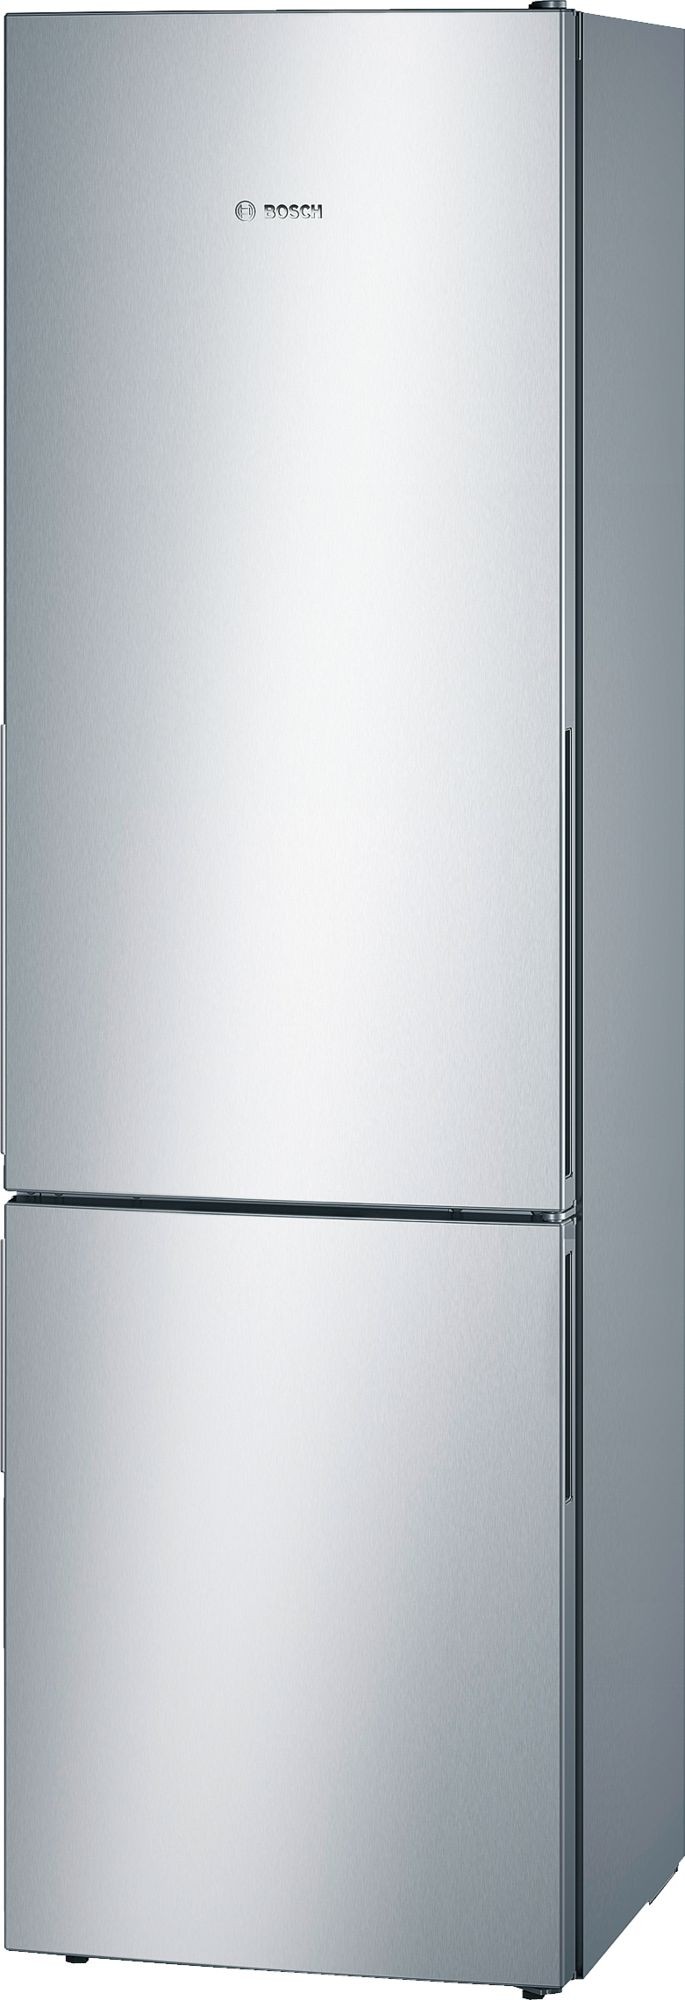 Bosch alulfagyasztós hűtőszekrény